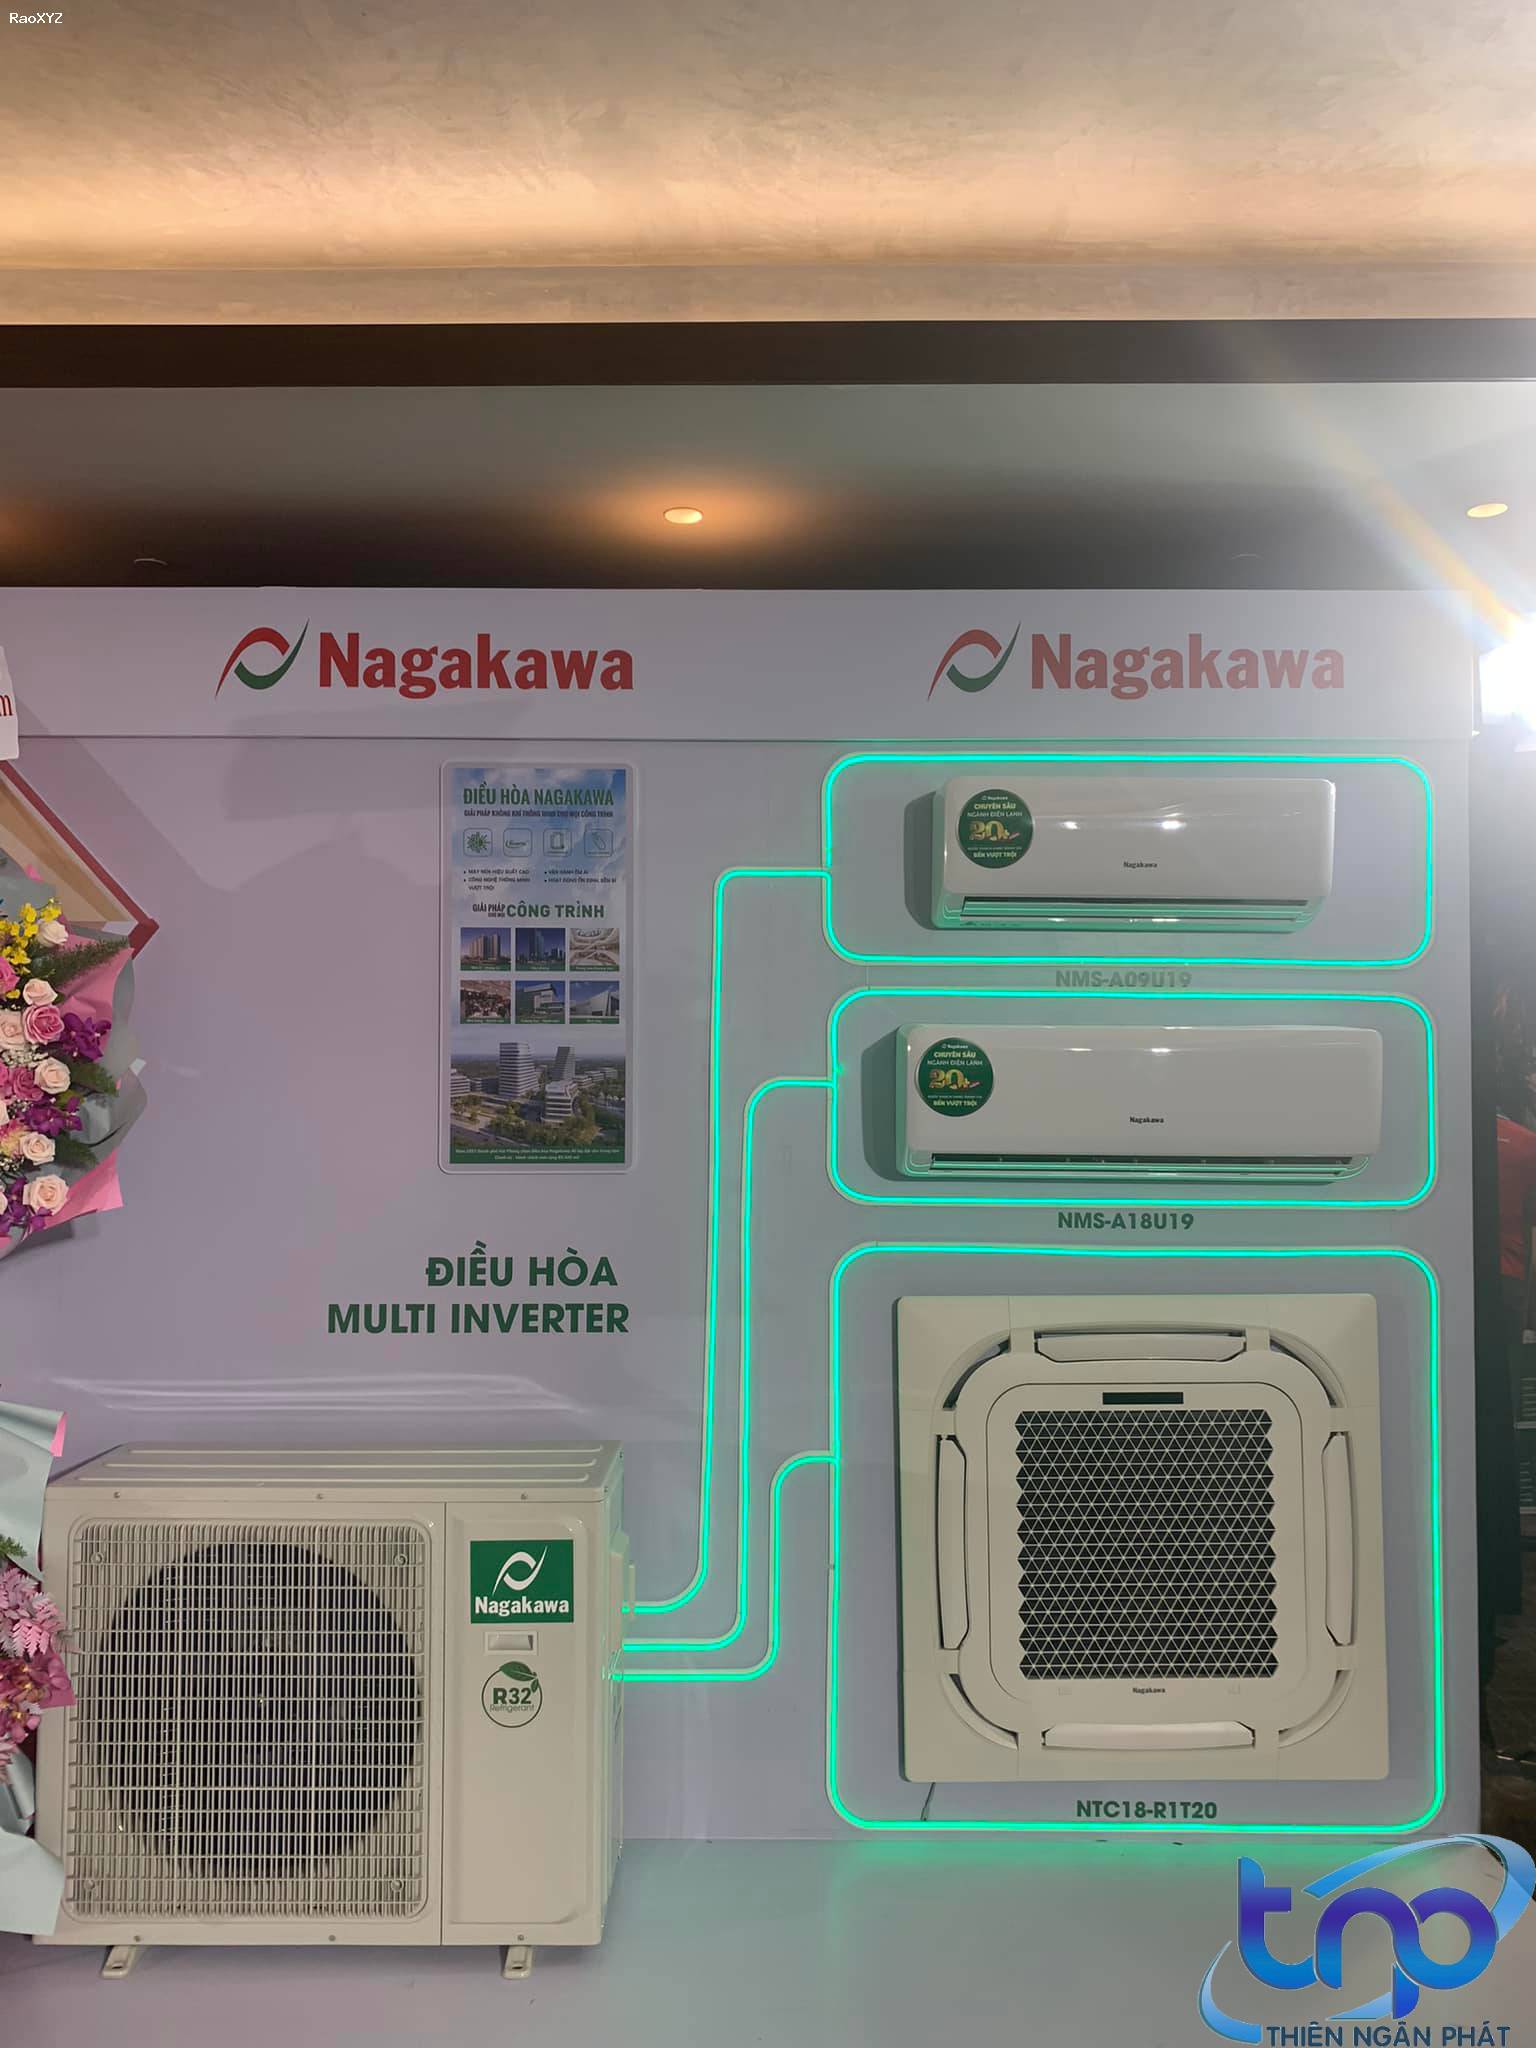 Giá máy lạnh Nagakawa tại Điện lạnh Thiên Ngân Phát